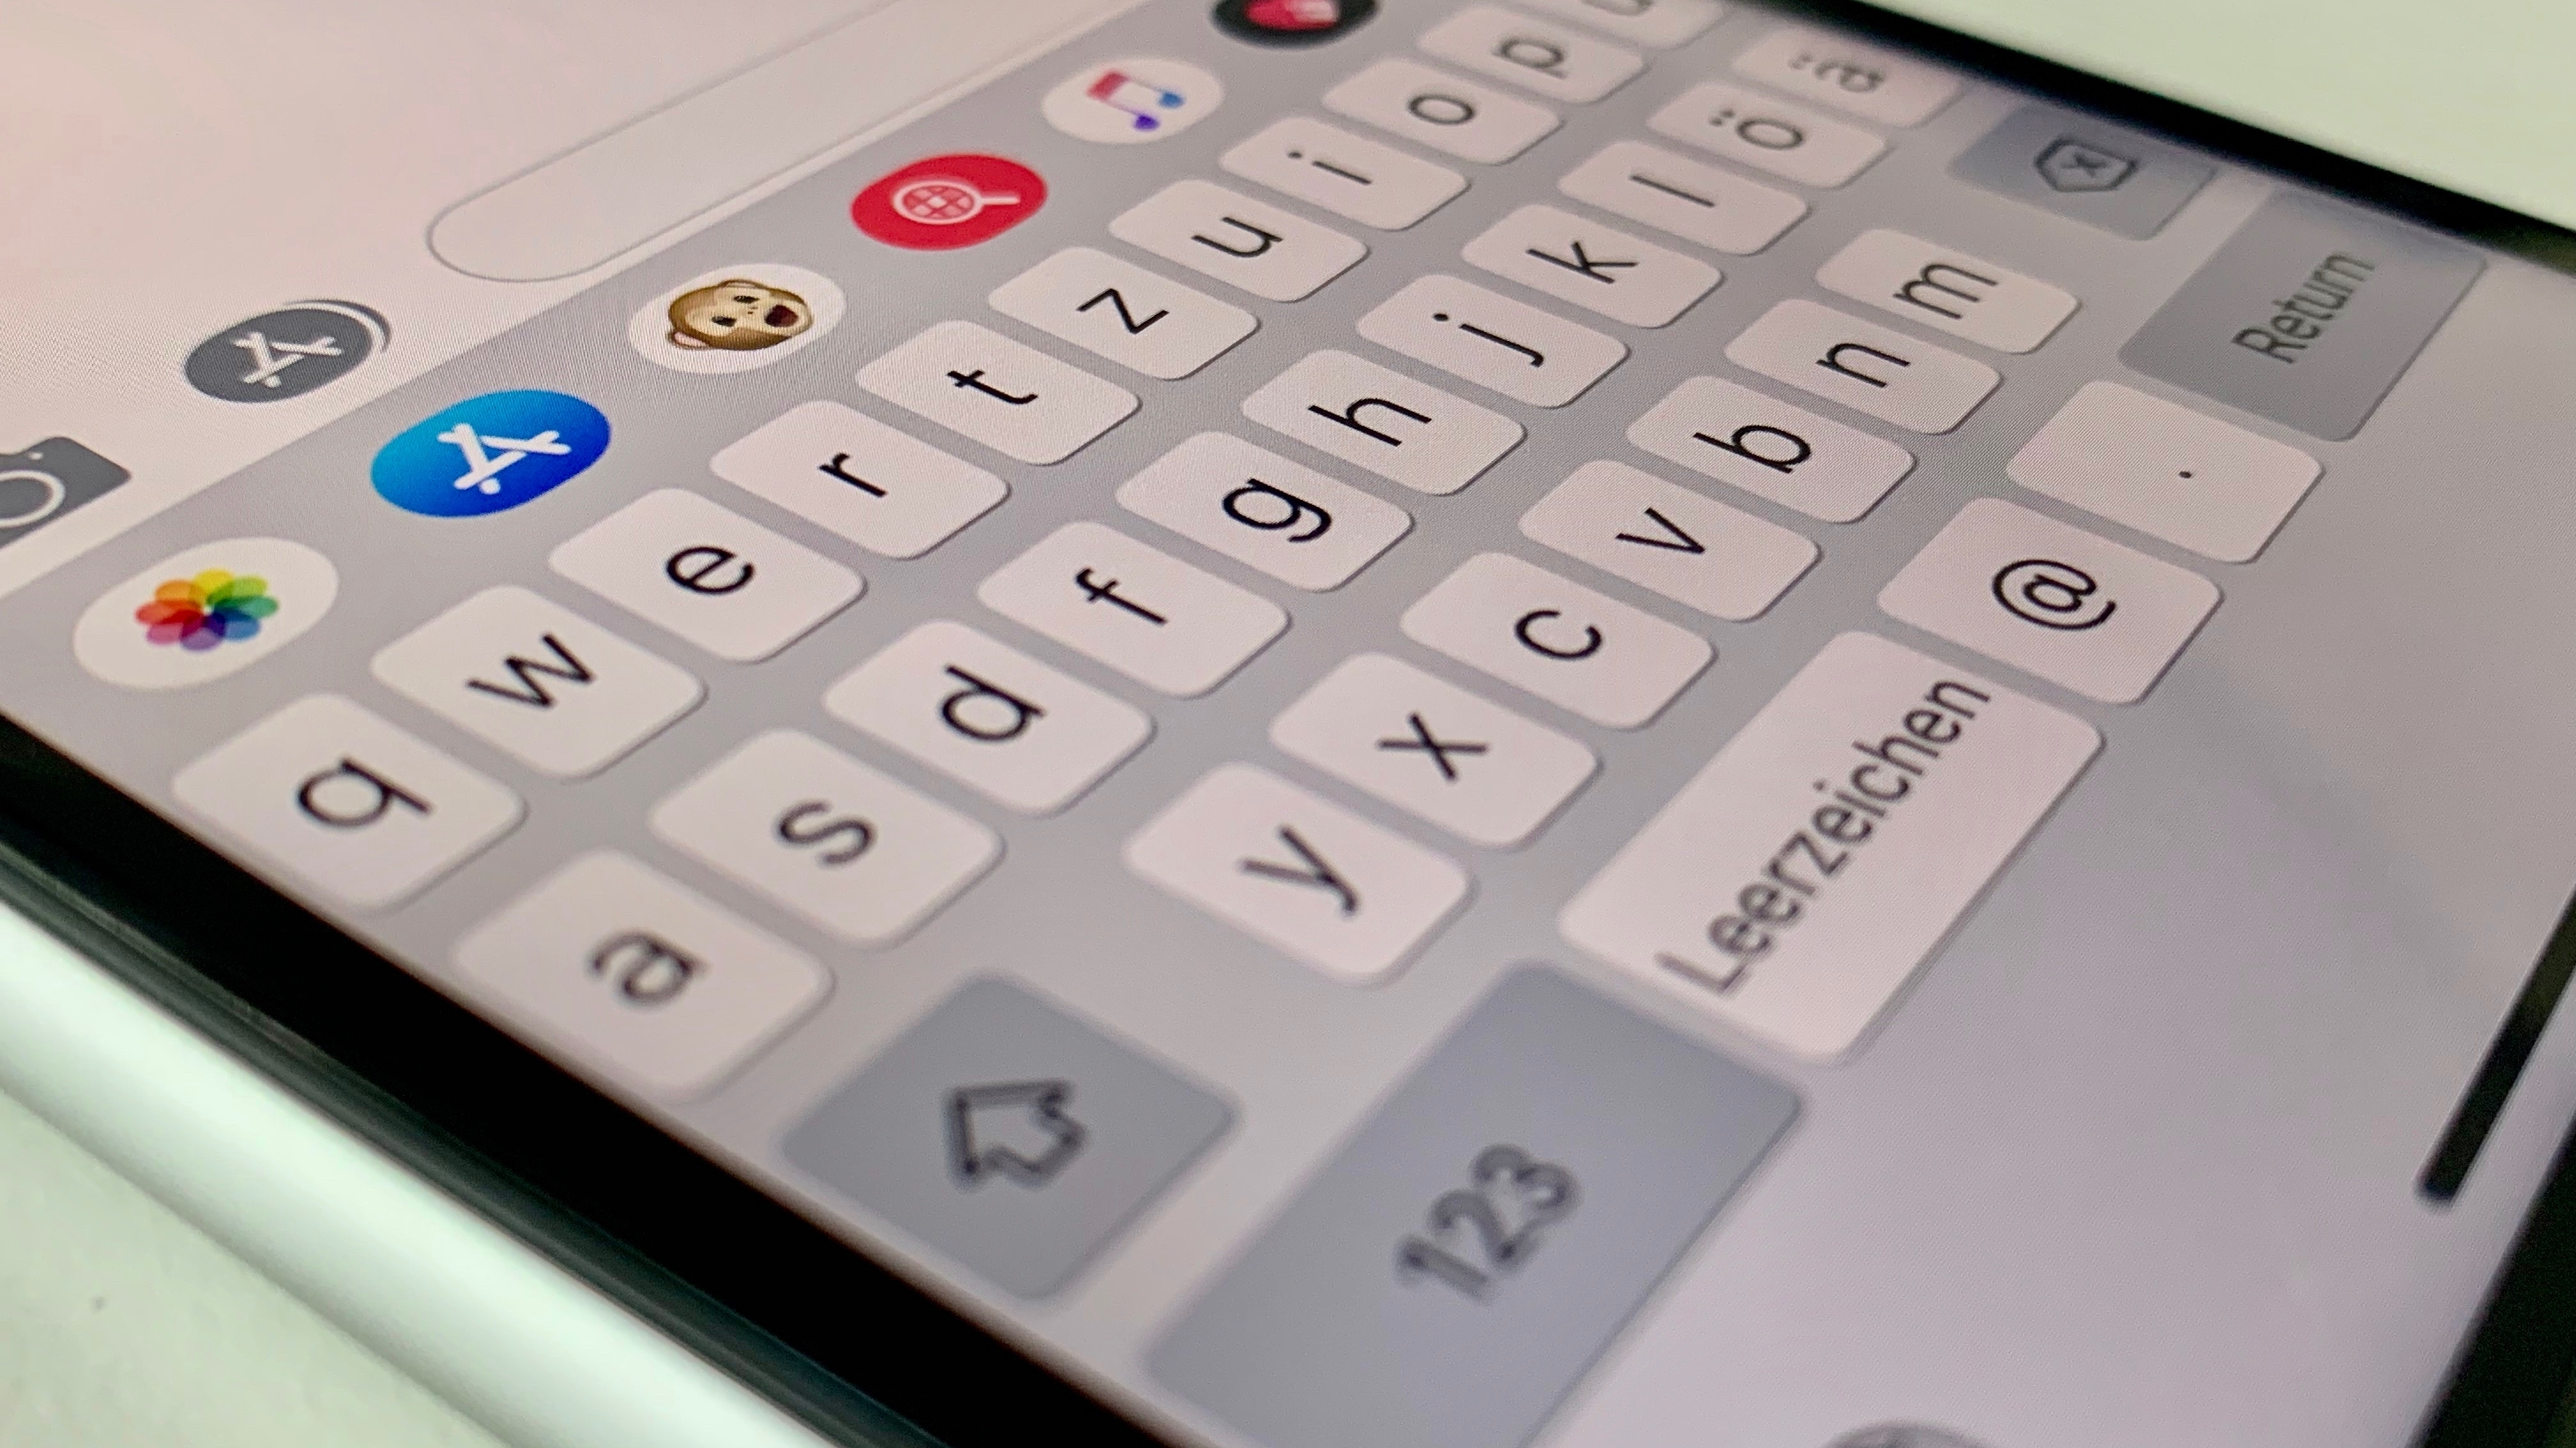 iPhone-Tastatur ändern - so funktioniert's | heise online